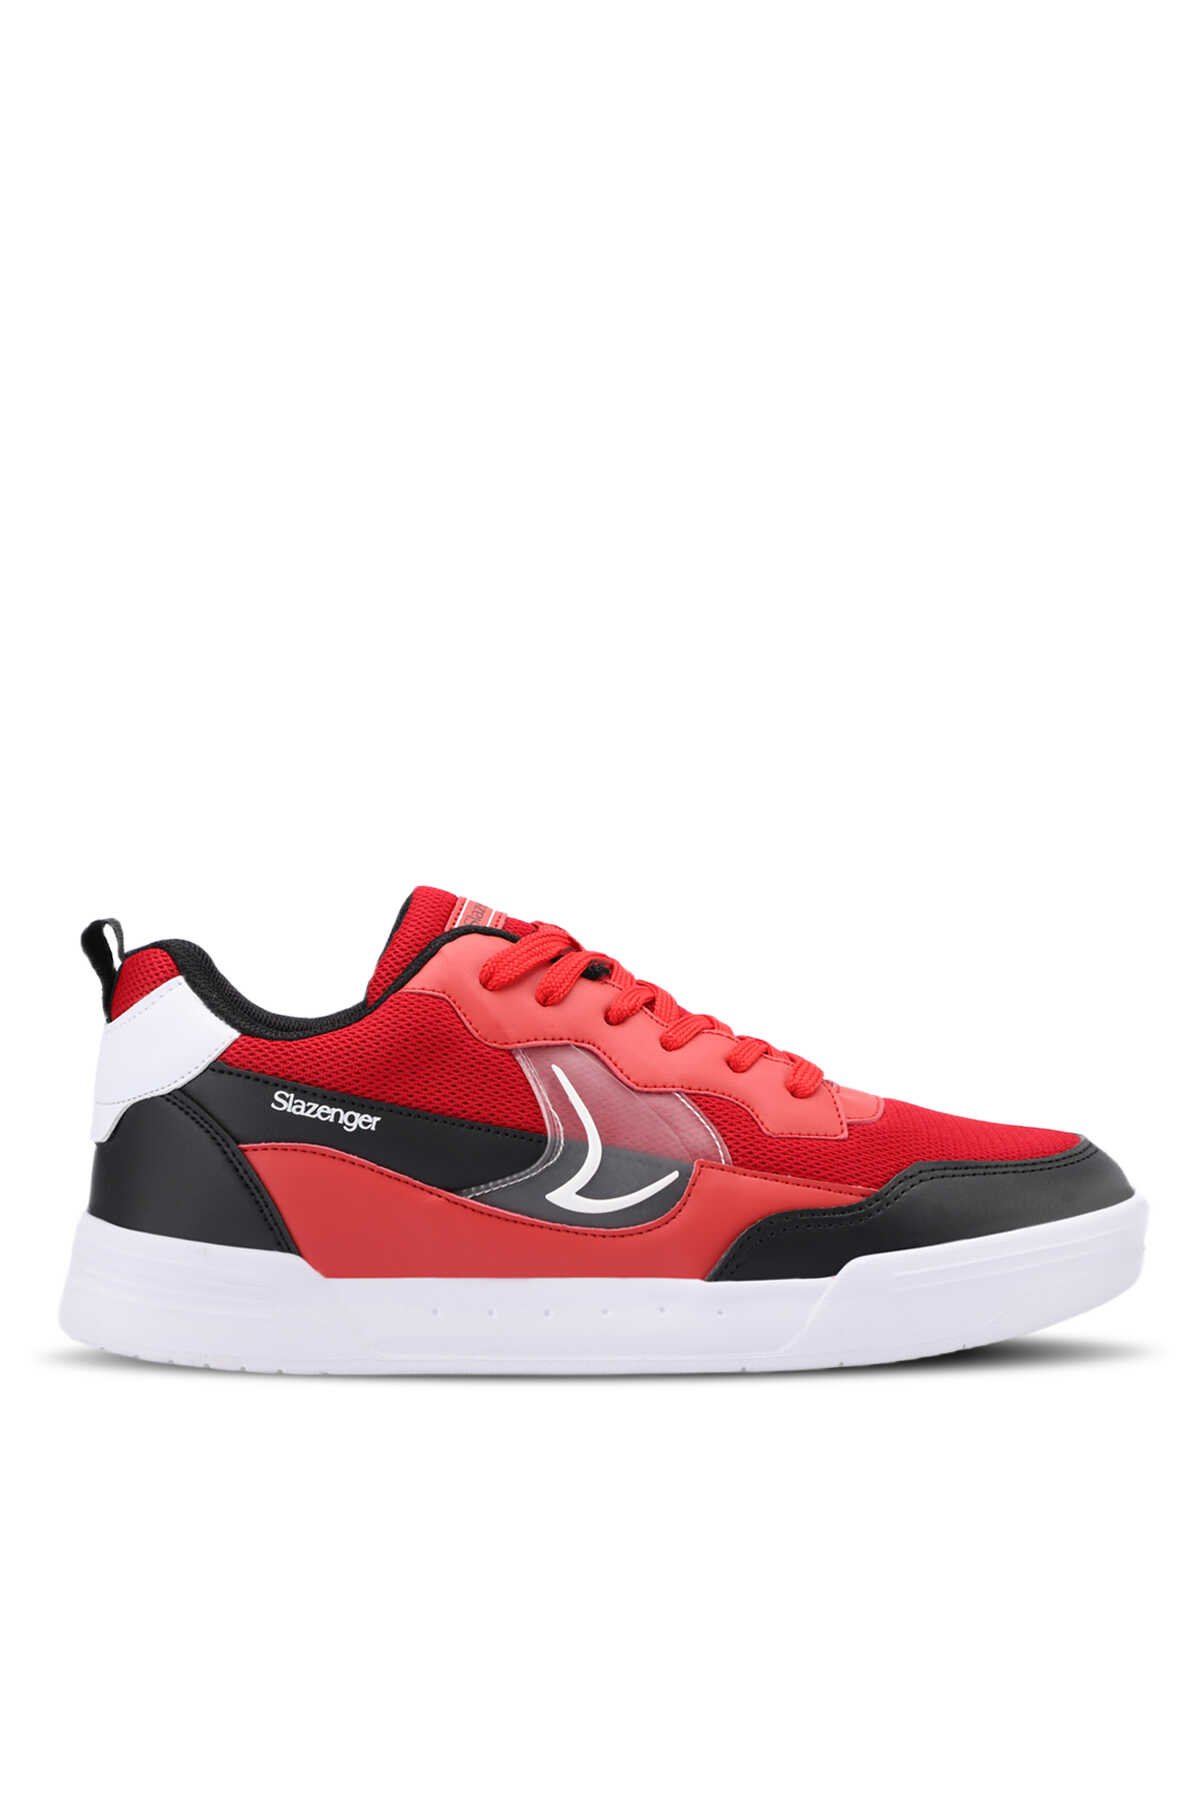 Slazenger - Slazenger BARBRO Sneaker Erkek Ayakkabı Kırmızı